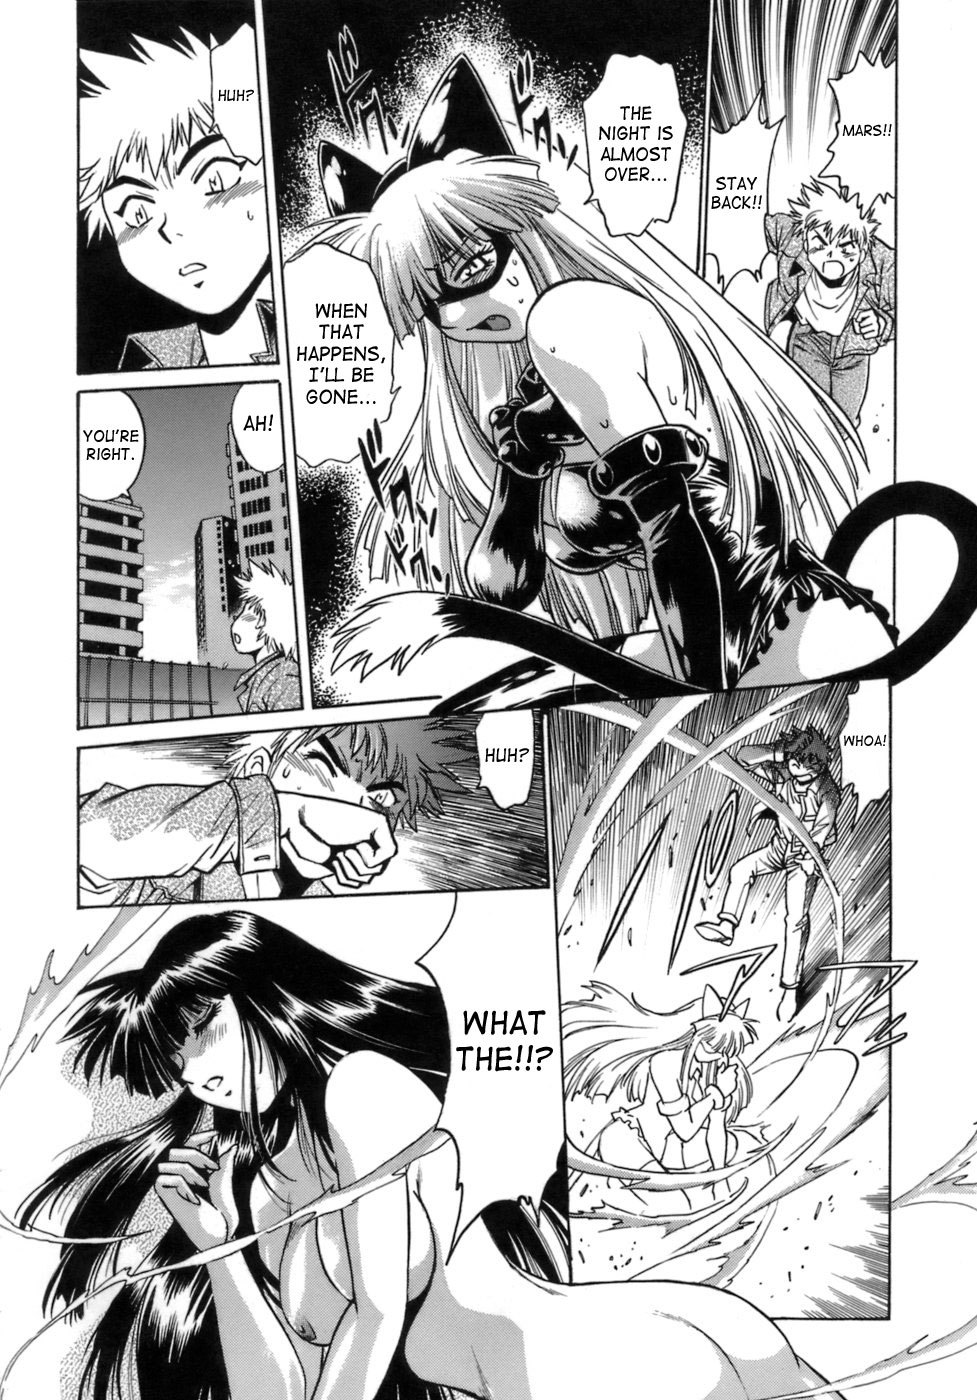 Tail Chaser Vol.1 64 hentai manga